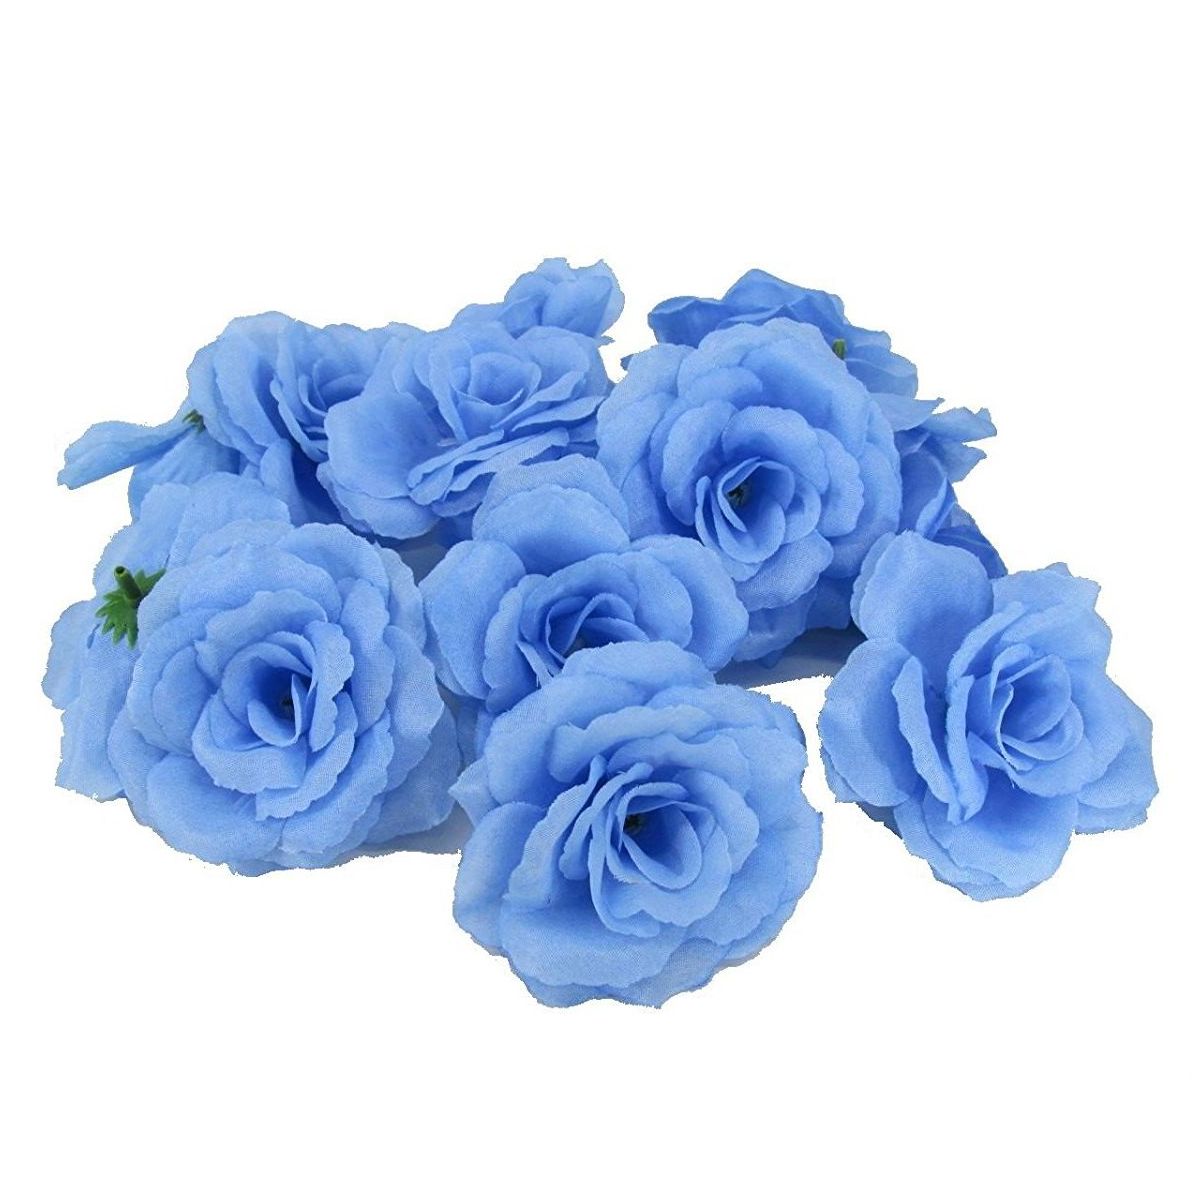 楽天市場 造花 バラ 花のみ 8センチ 50個 ライトブルー モノッコ